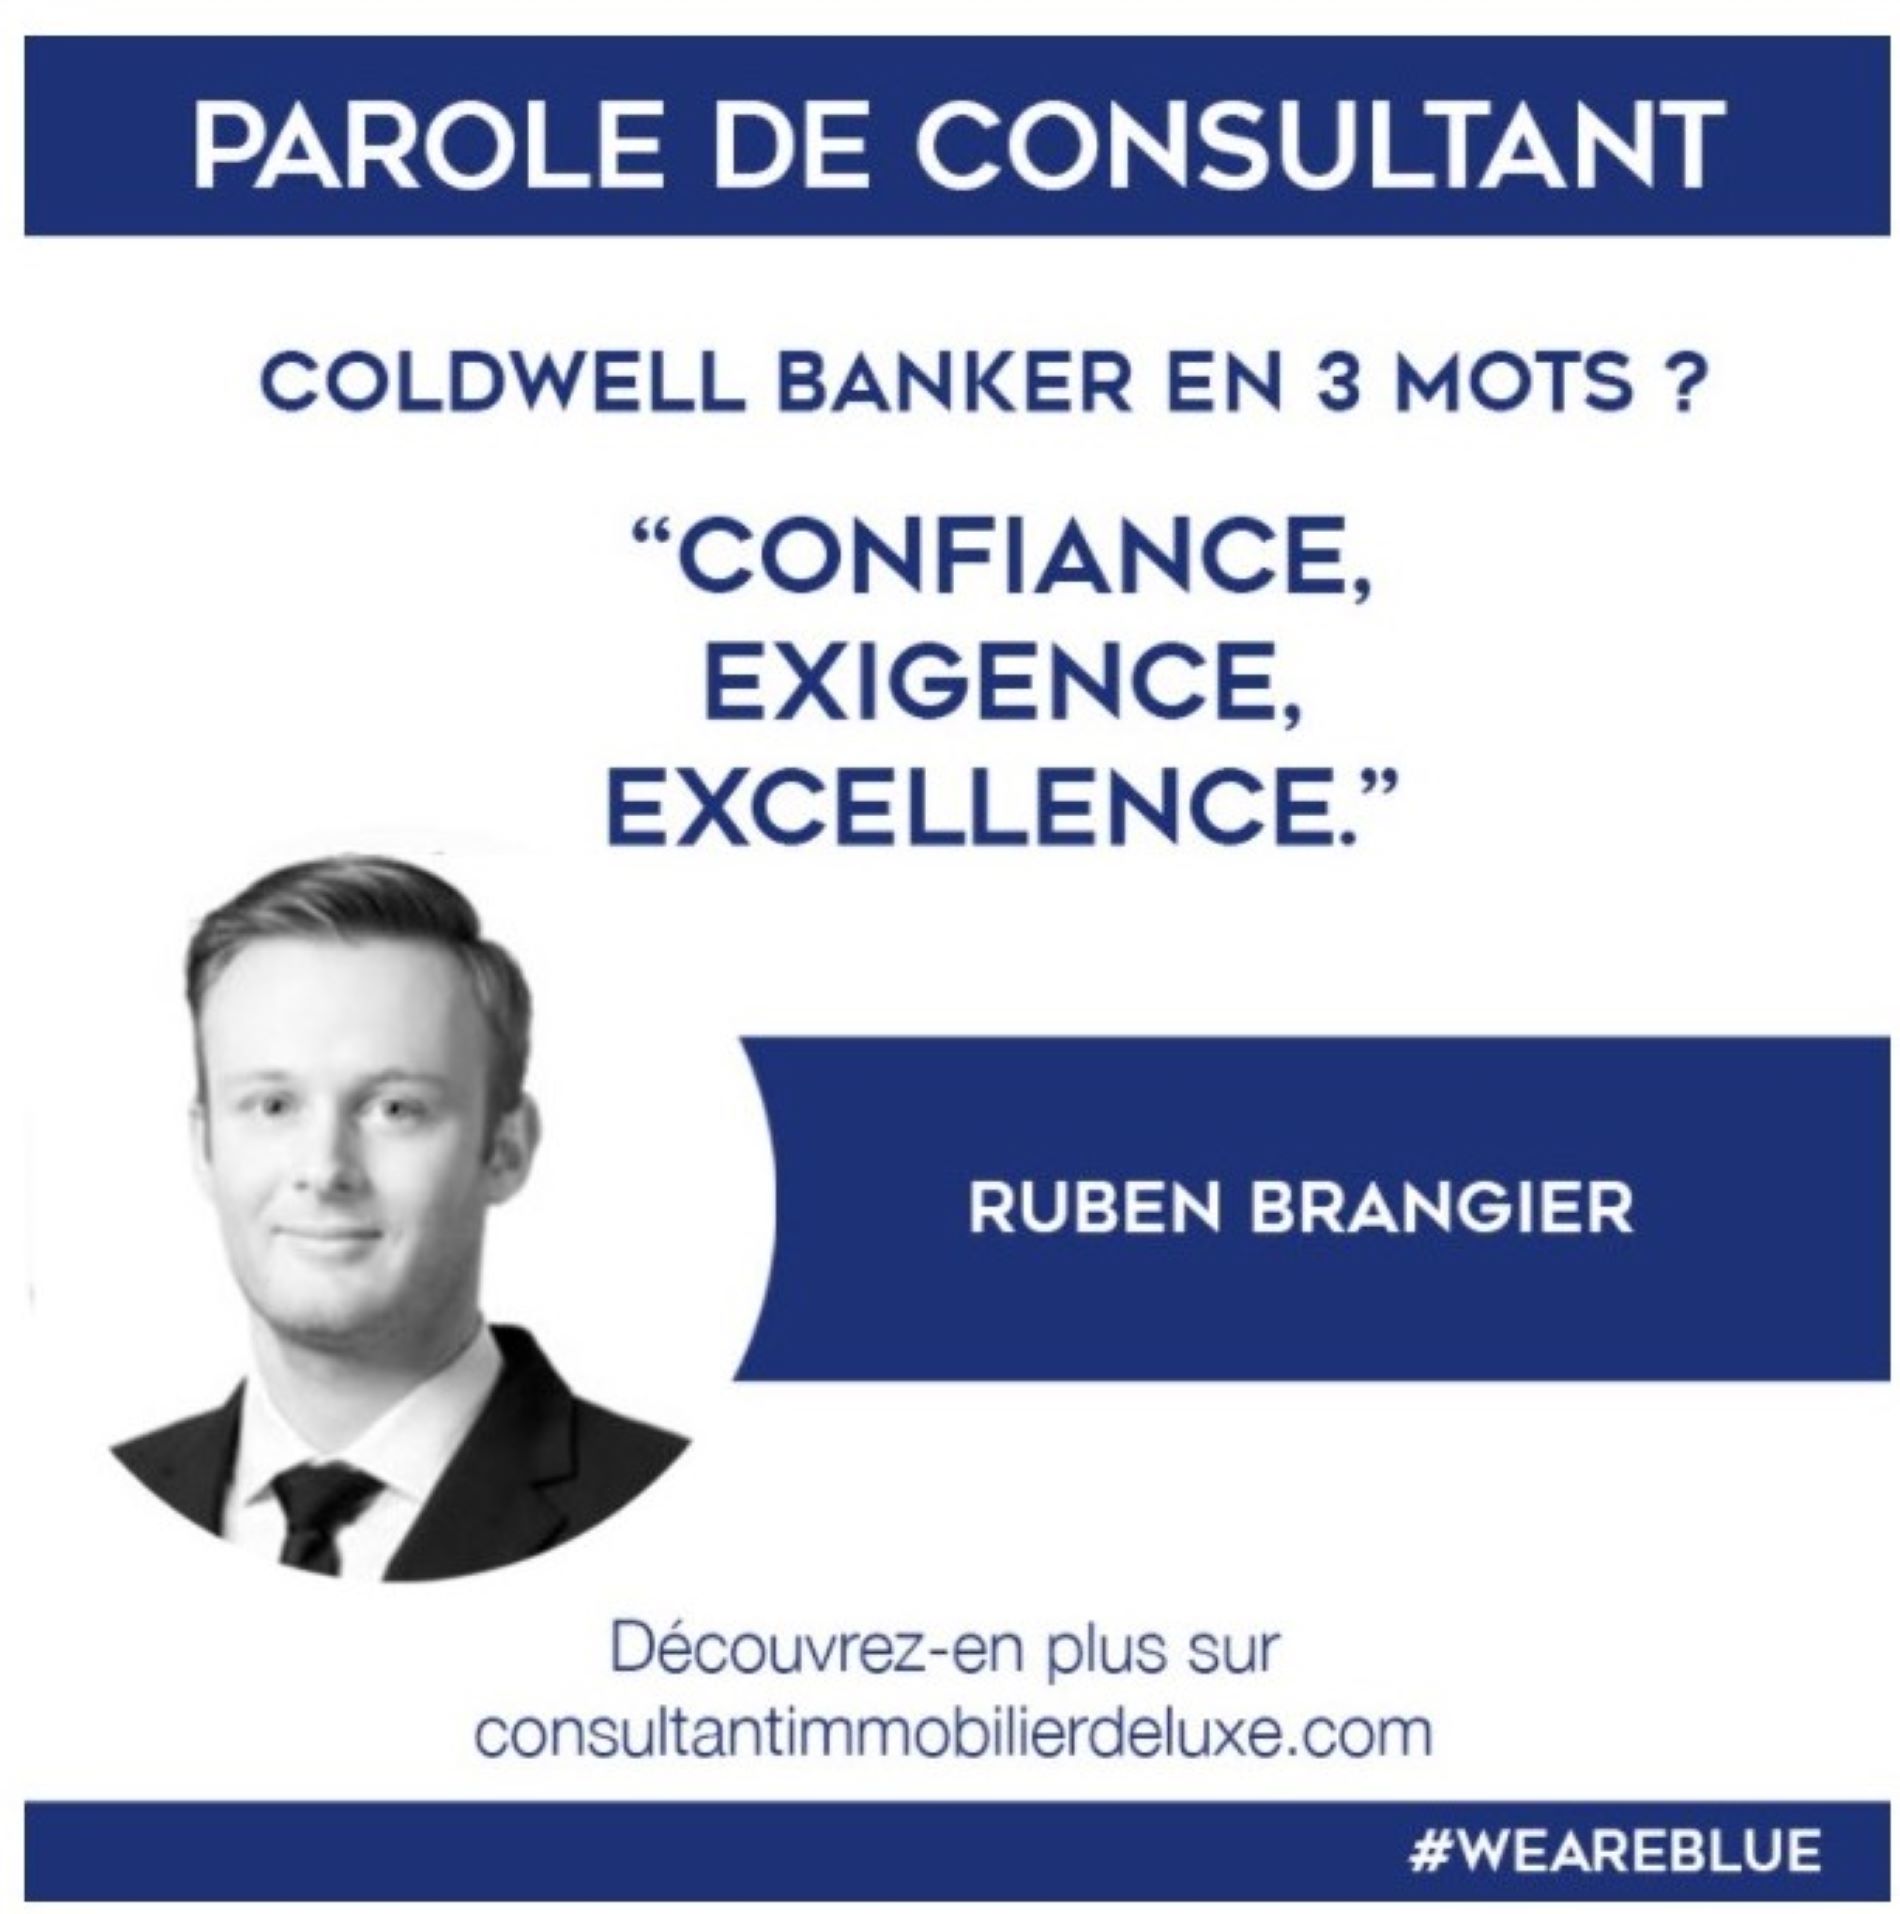 Parole de consultant Coldwell Banker